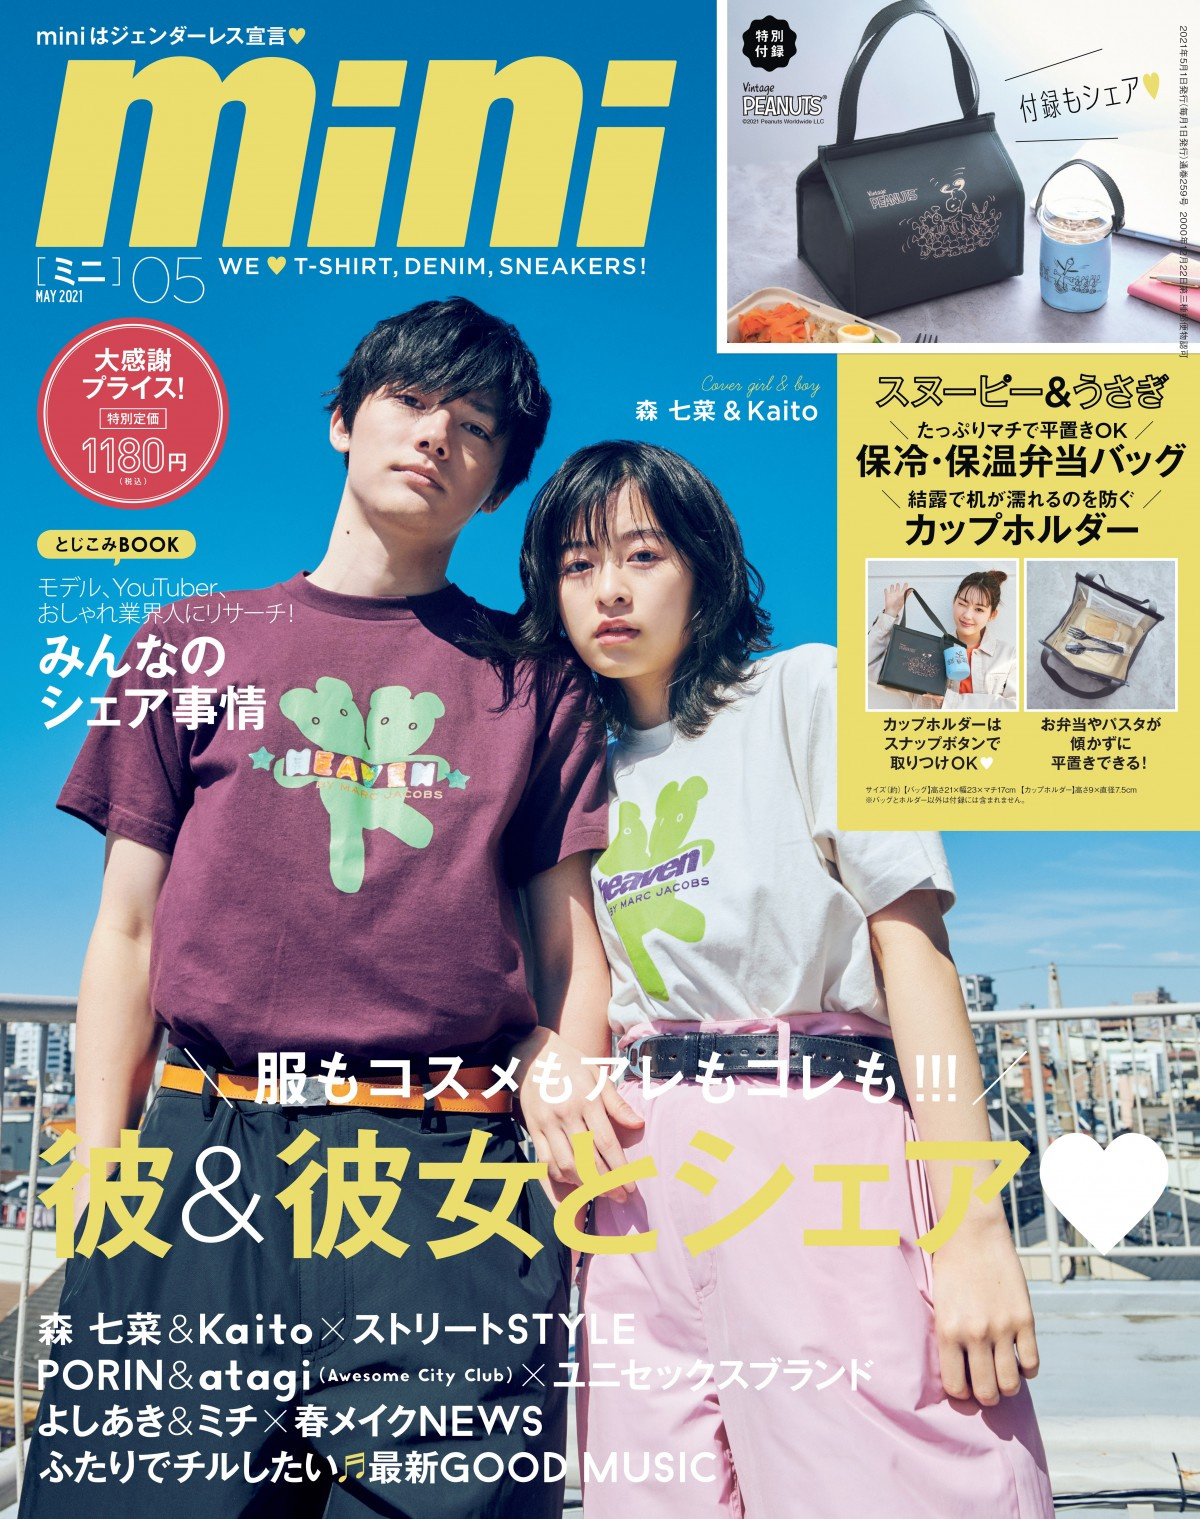 森七菜 Kaito ペアルックで腕組み2ショット Mini 初の男女カップル表紙 Oricon News